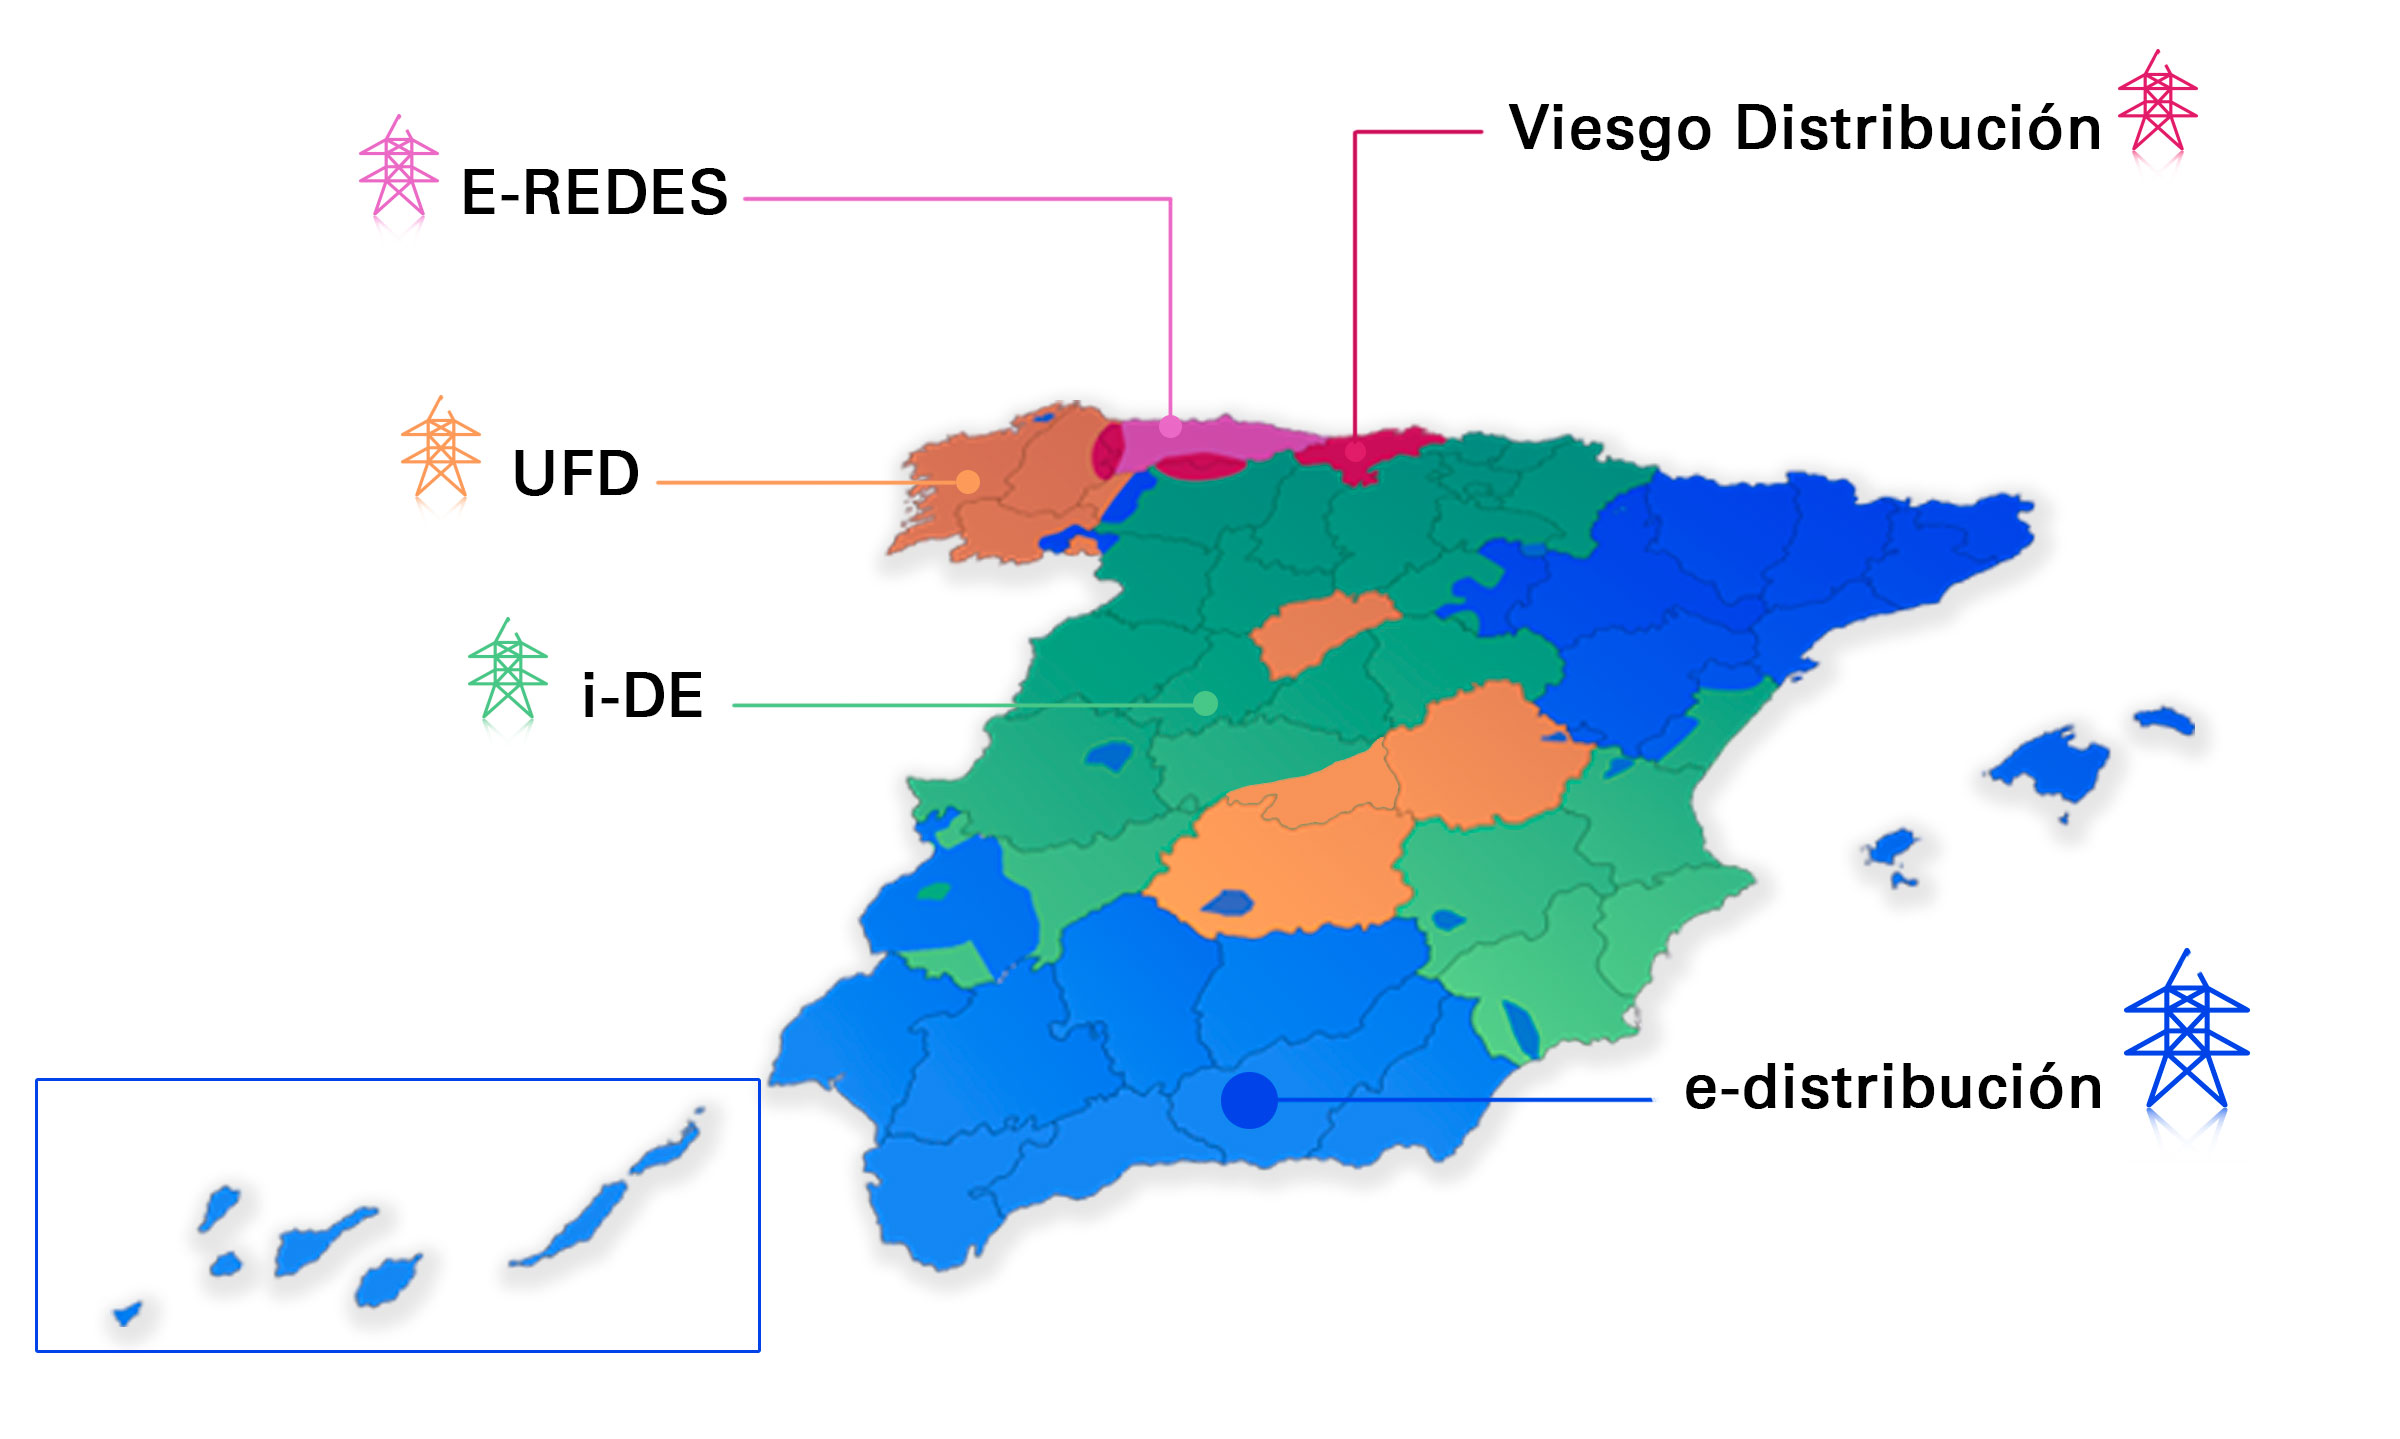 Imagen: mapa de España con las zonas correspondientes a cada distribuidora eléctrica. La información se explica a continuación en texto.